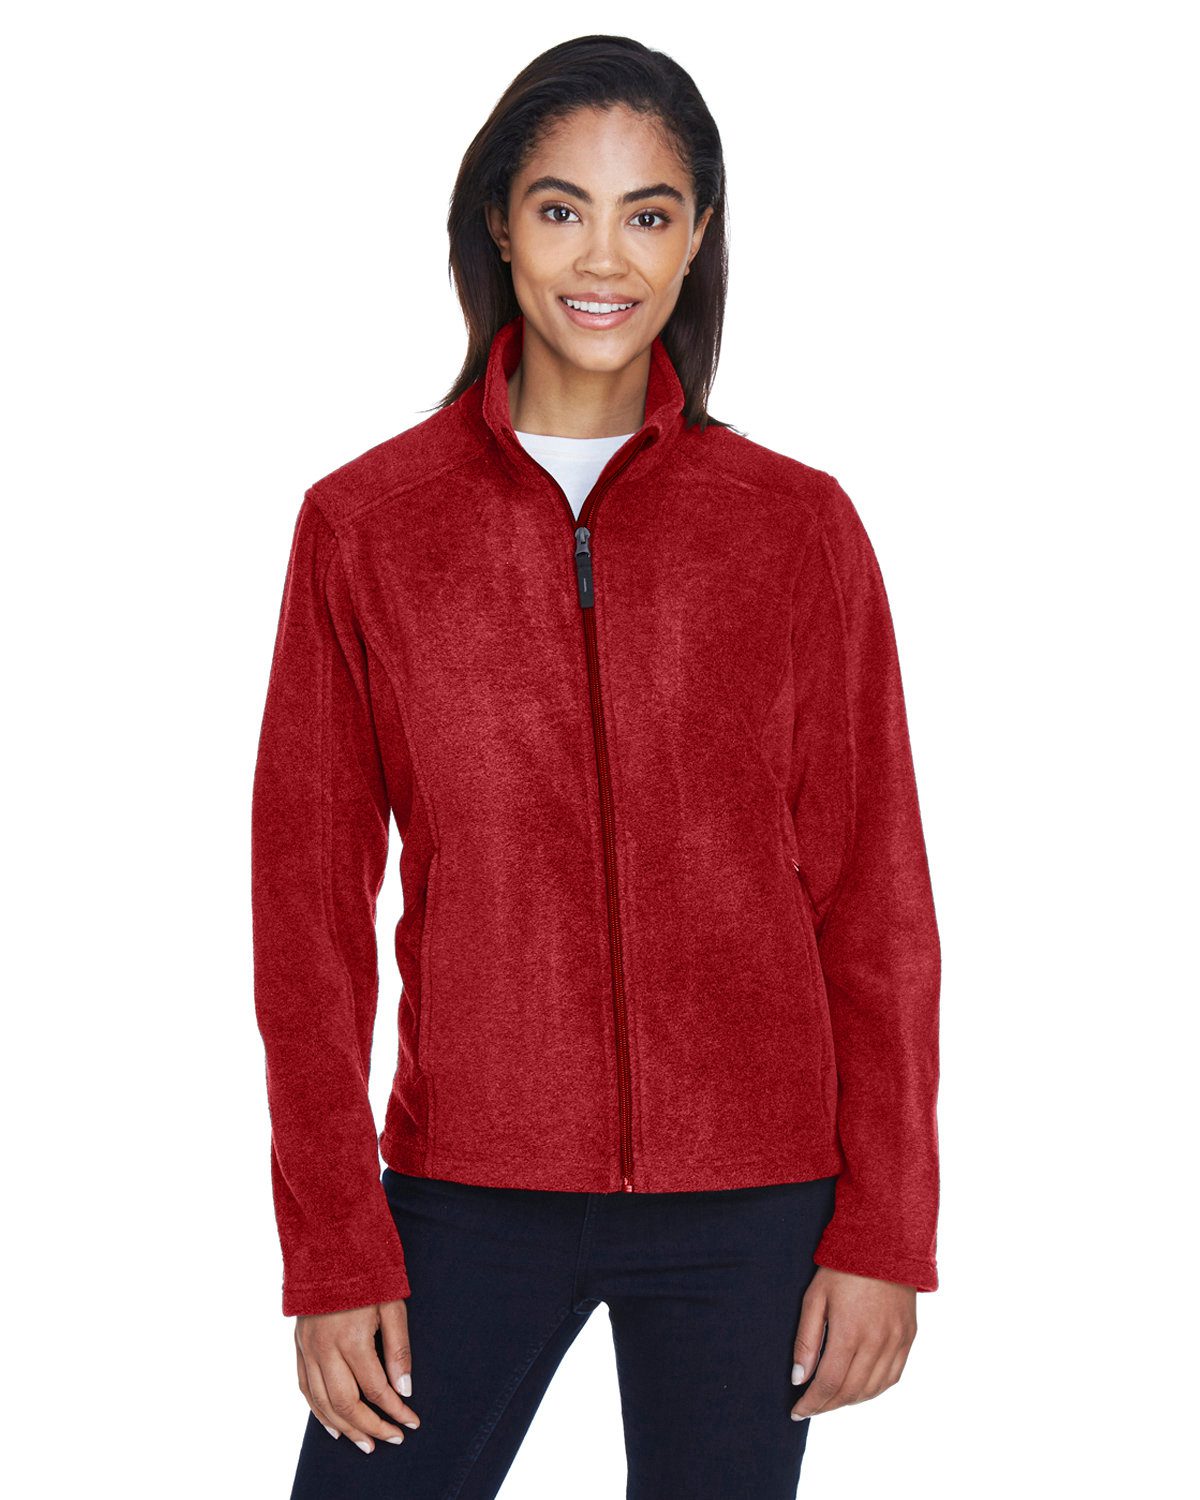 Core 365 Ladies' Journey Fleece Jacket #78190 Red